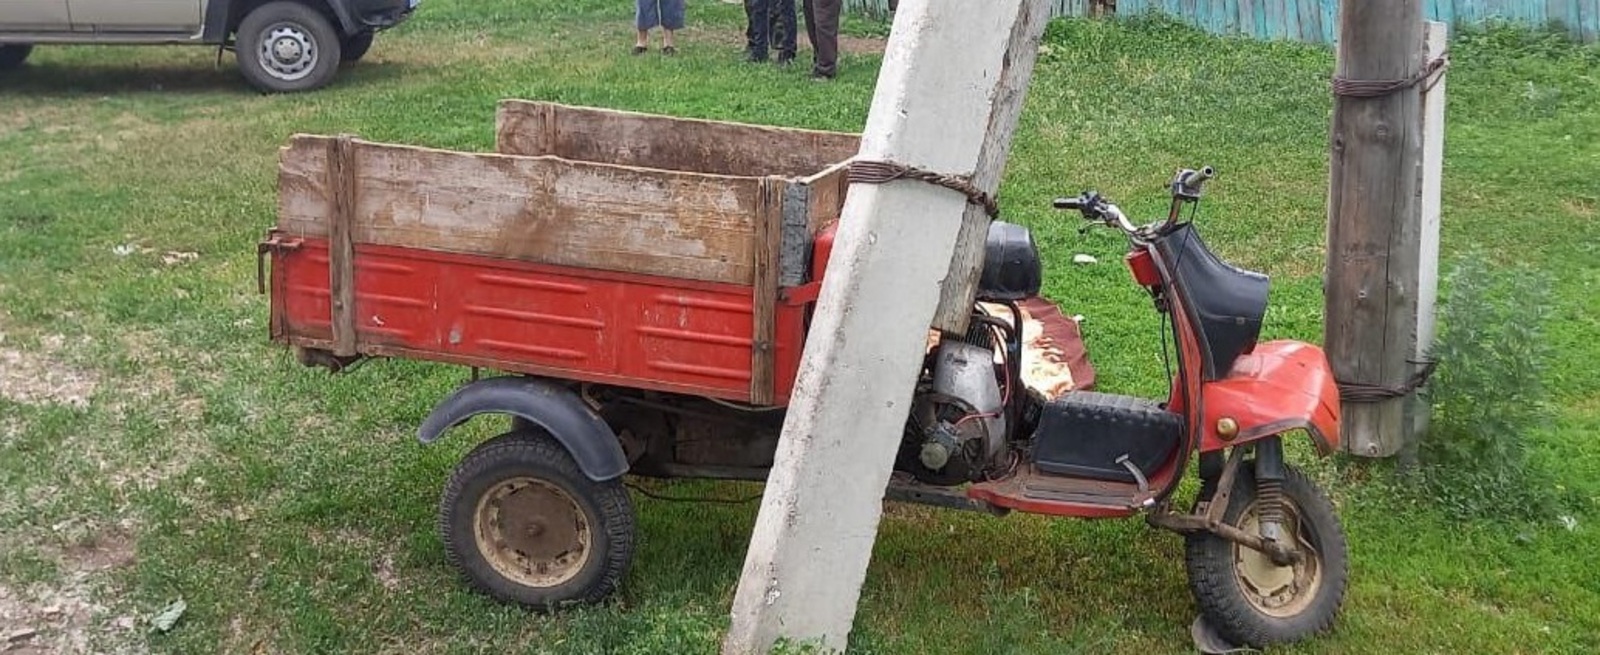 В Башкирии 56-летний водитель на мотороллере врезался в электроопору